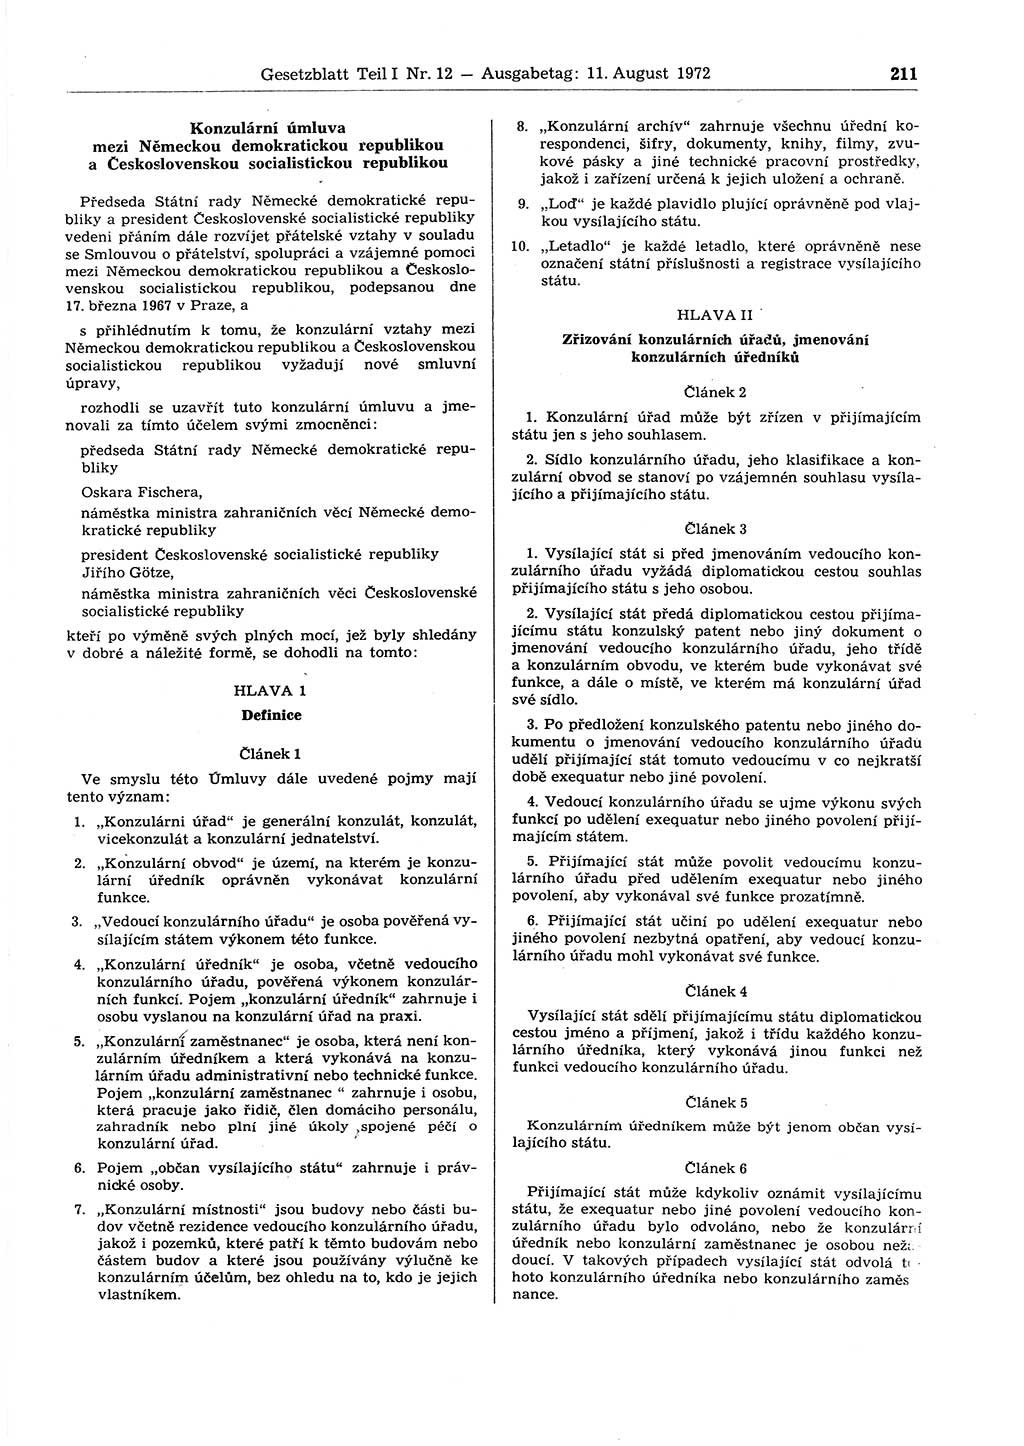 Gesetzblatt (GBl.) der Deutschen Demokratischen Republik (DDR) Teil Ⅰ 1972, Seite 211 (GBl. DDR Ⅰ 1972, S. 211)